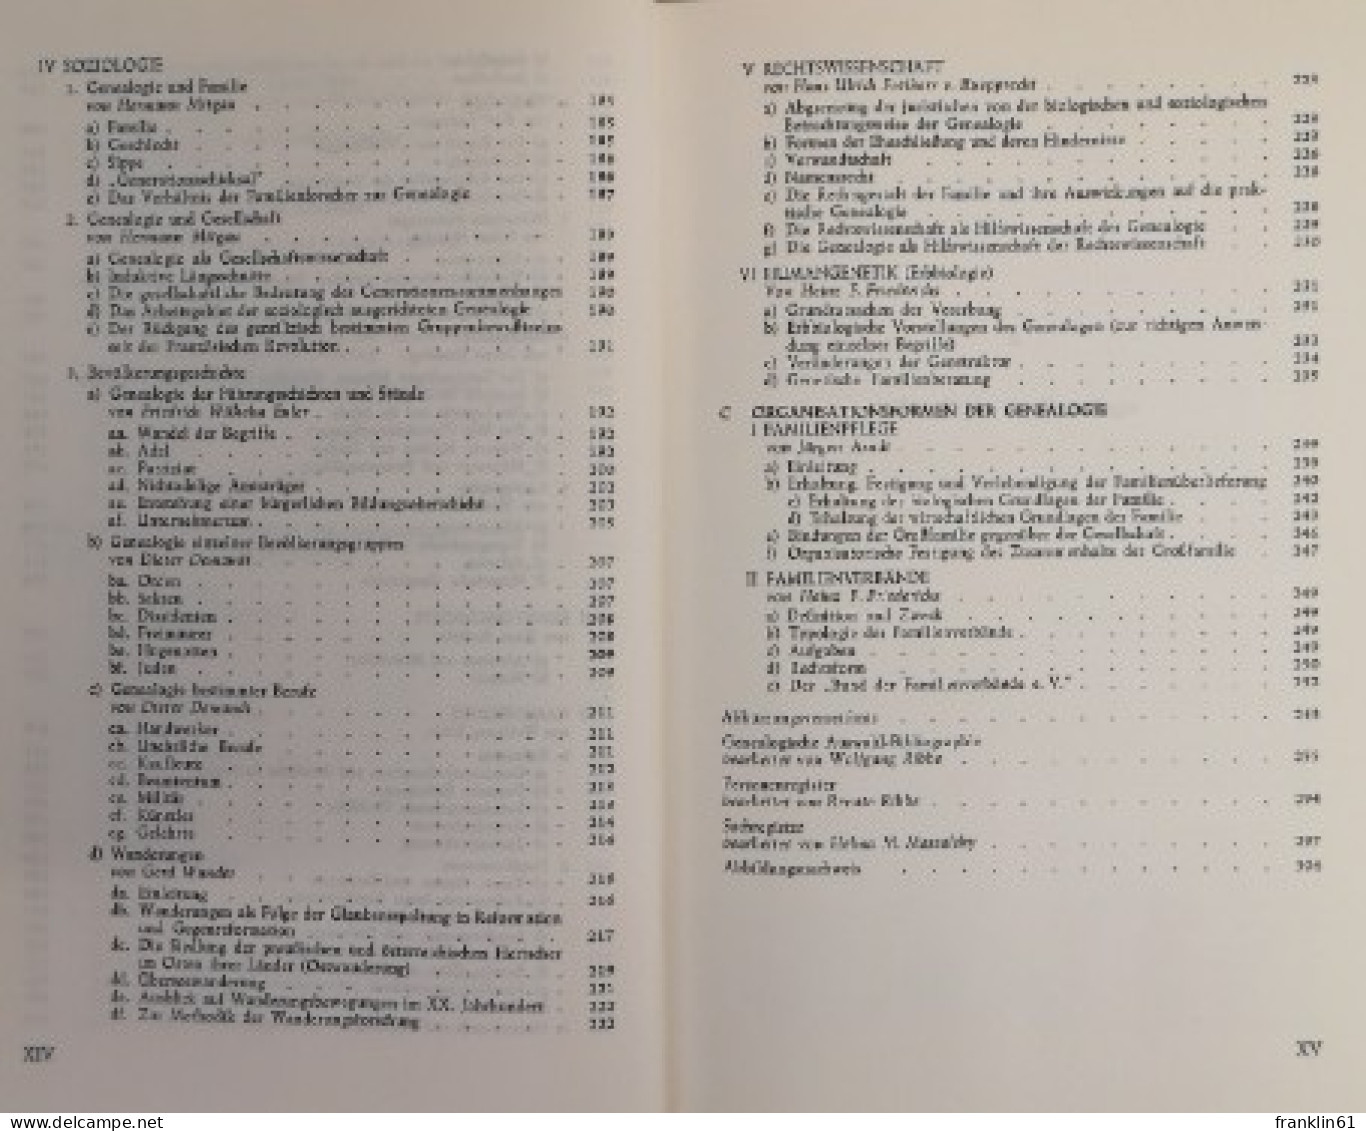 Handbuch der Genealogie.